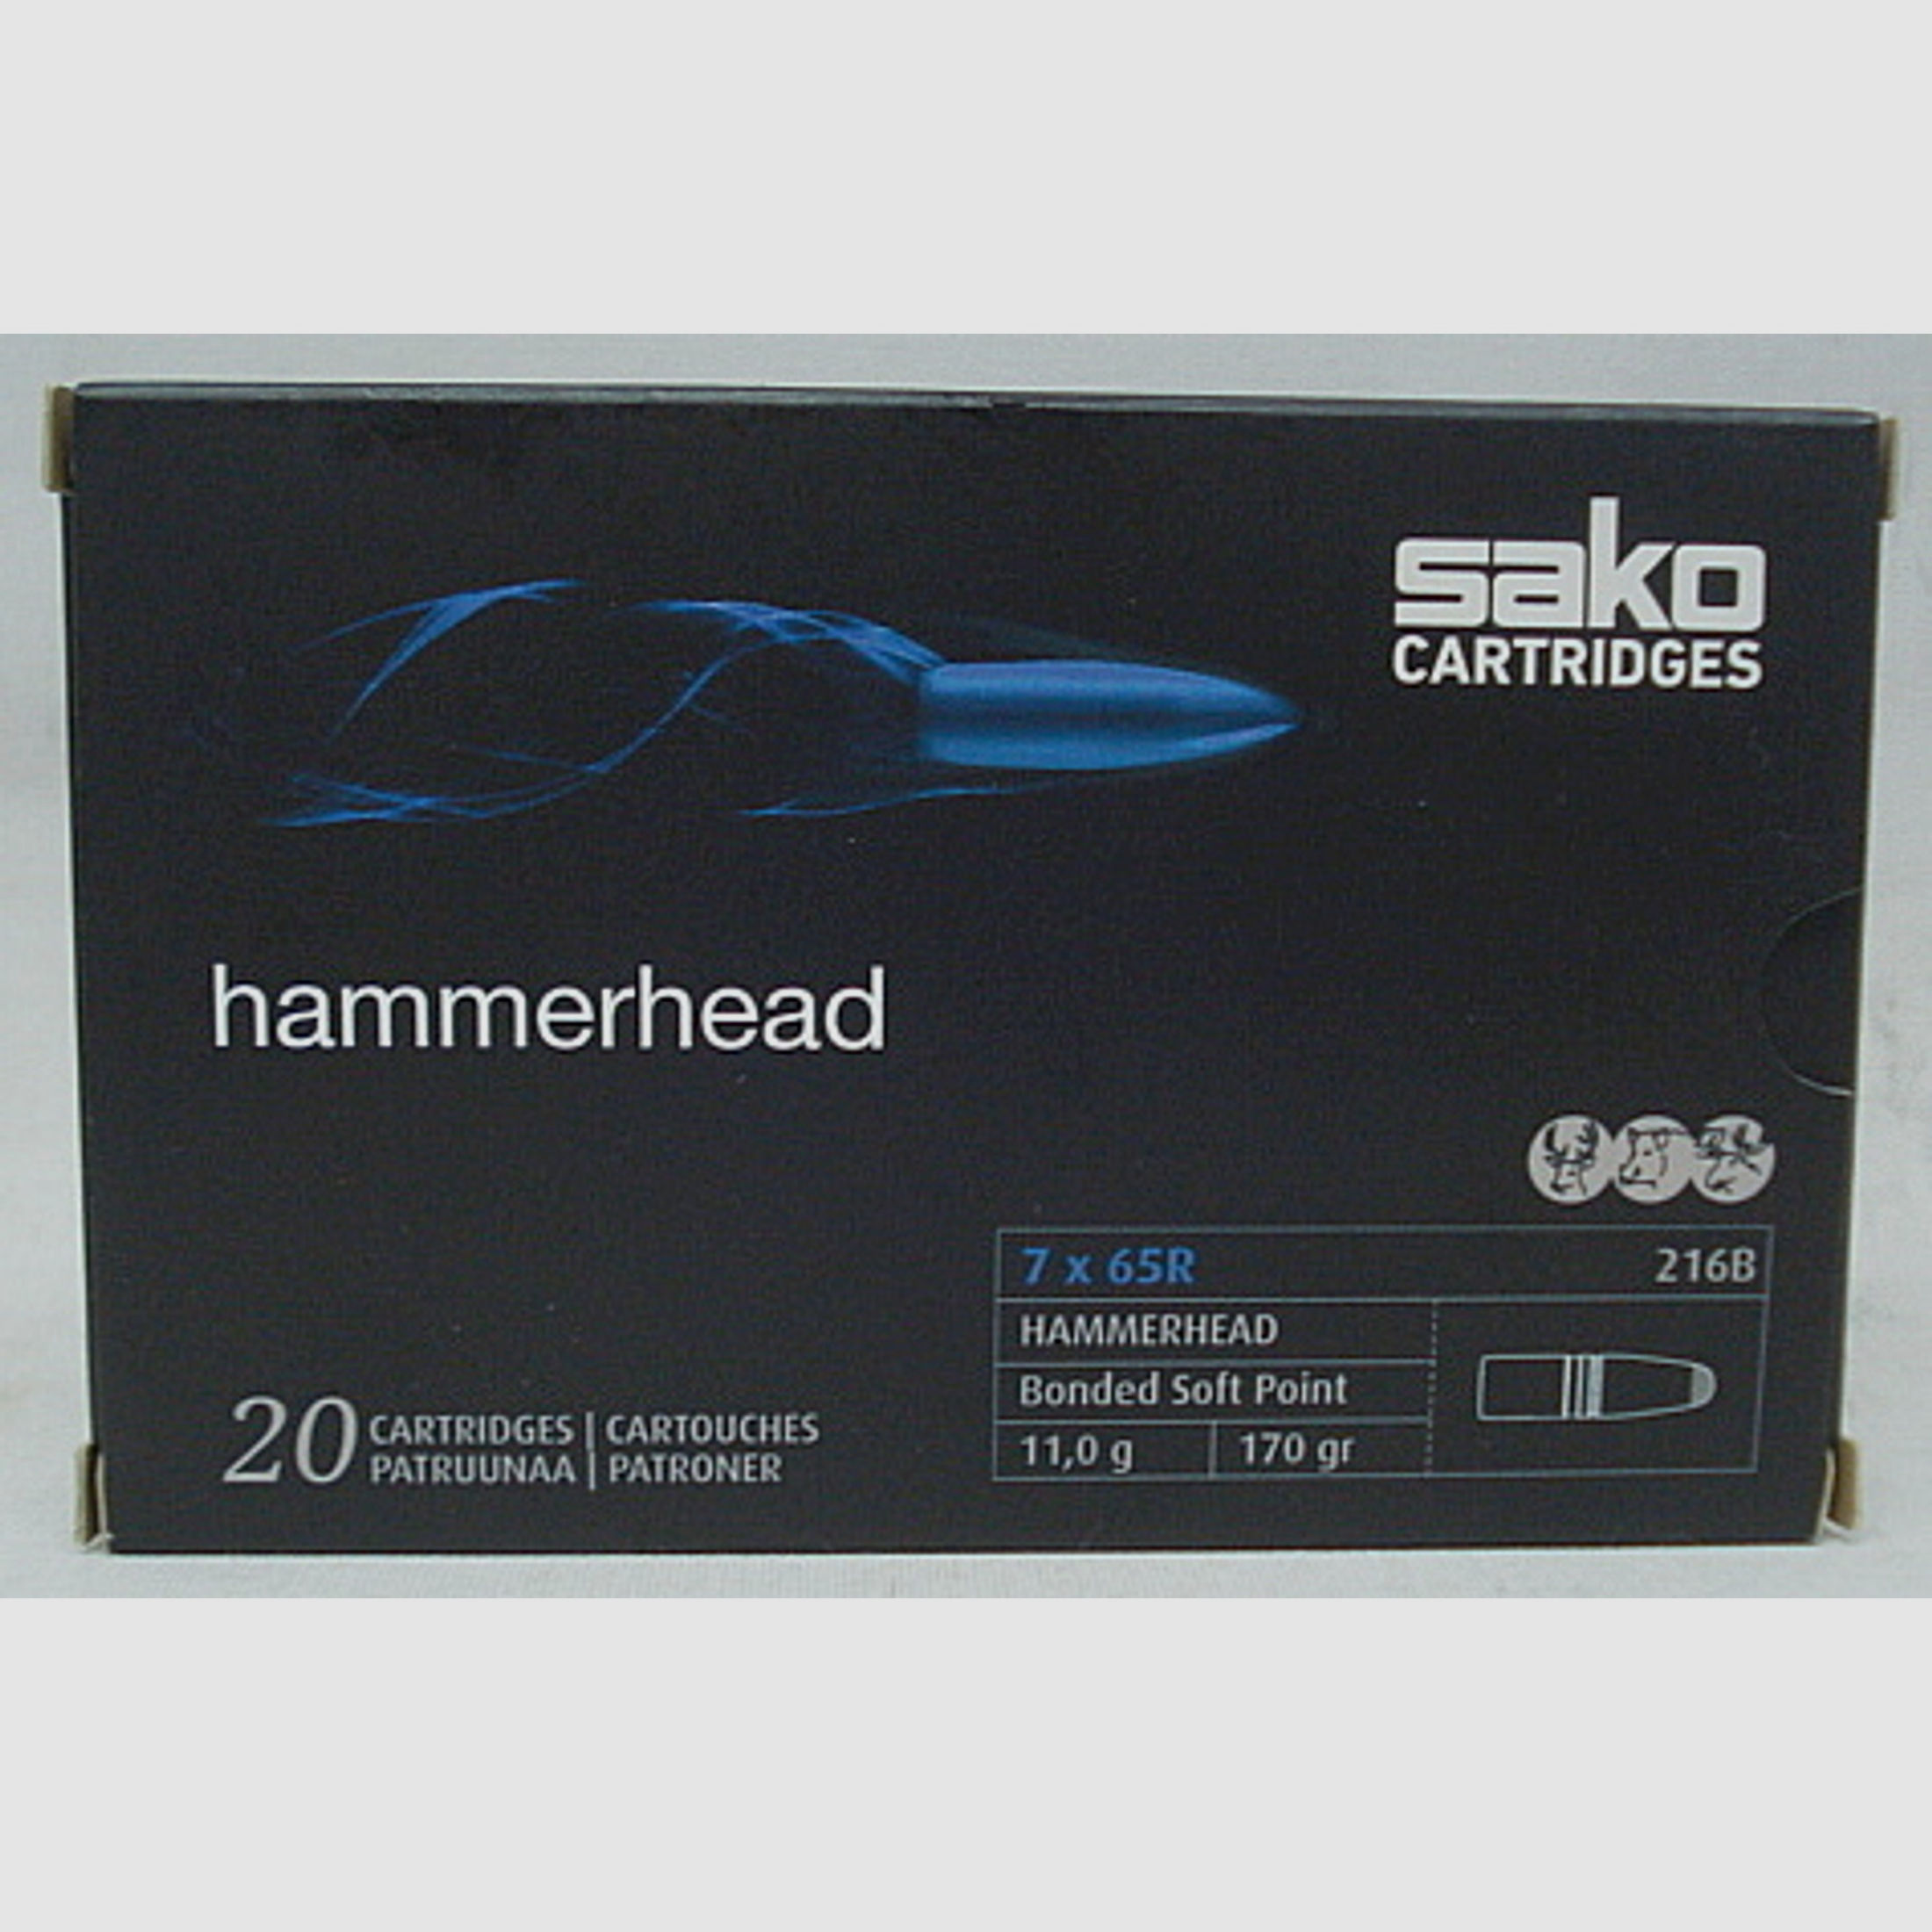 7x65R Hammerhead SP - 11,0g/170gr (a20)